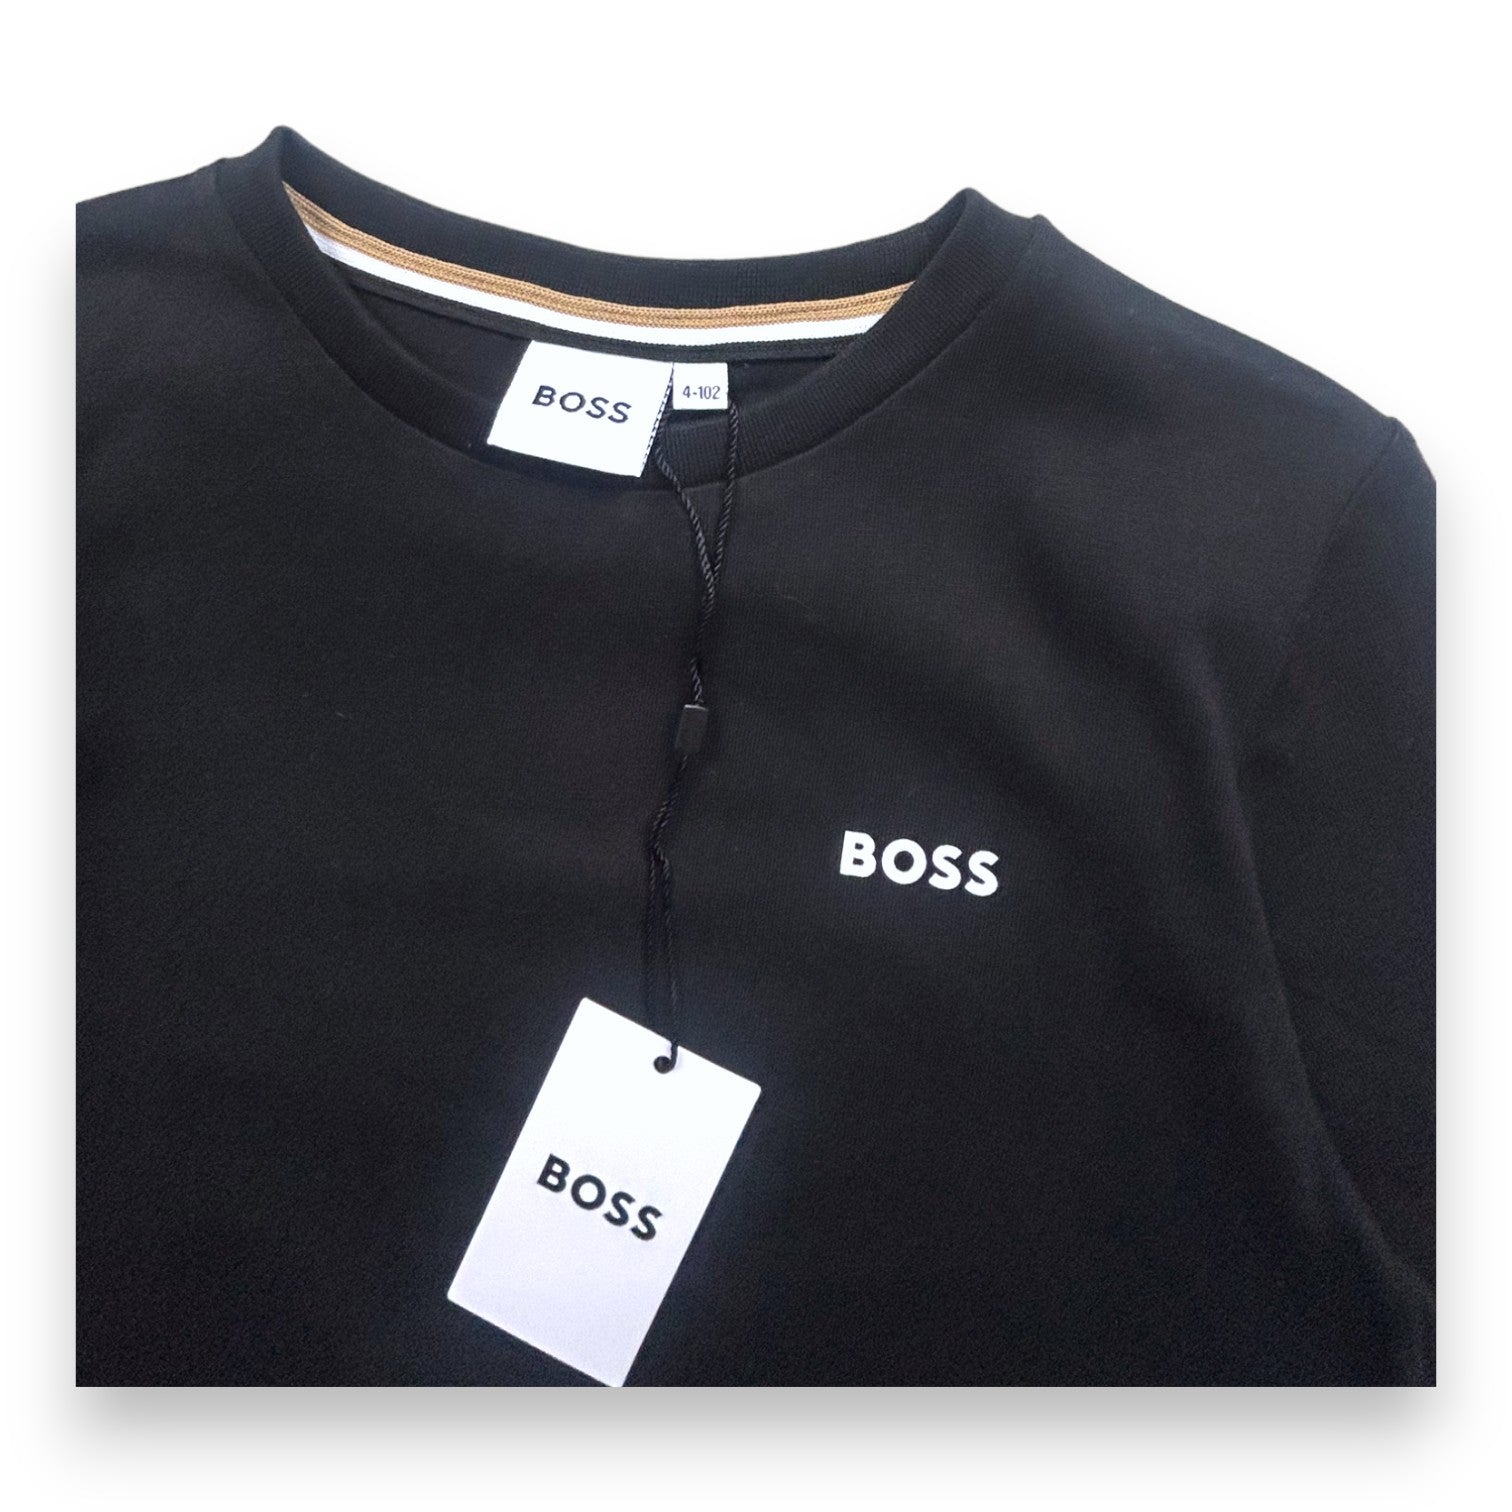 BOSS - T-shirt manches longues noir (neuf) - 4 ans